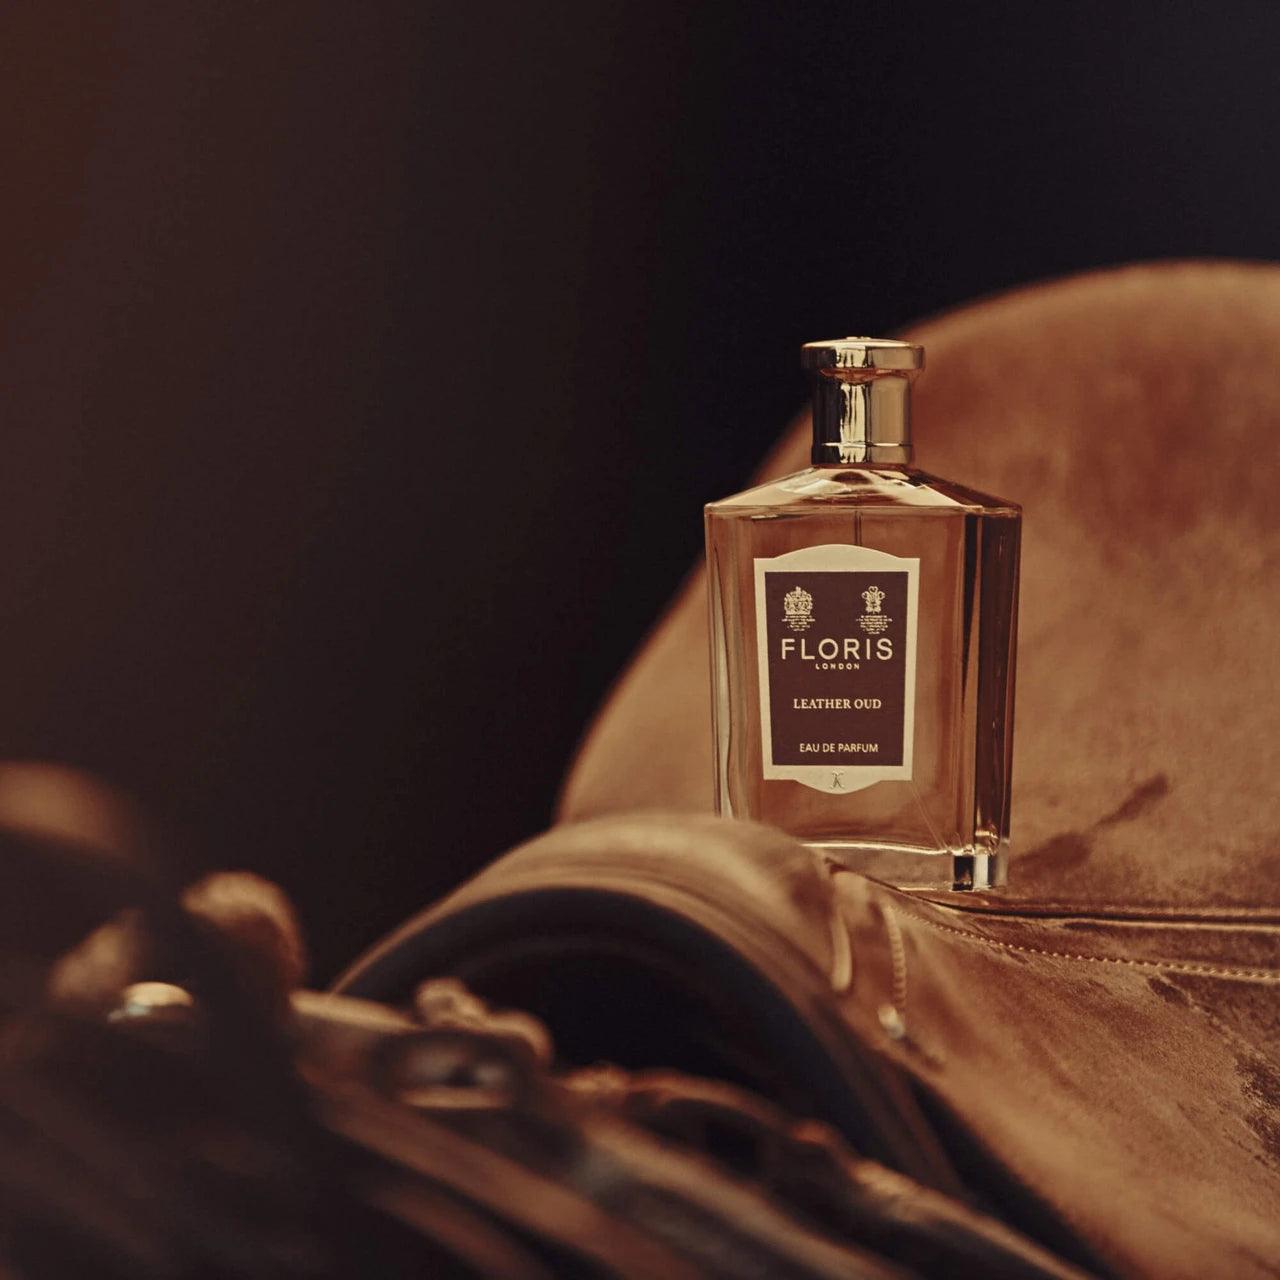 Floris Leather Oud, Eau de Parfum, 2 ml | Parfyme | Floris London | JK SHOP | JK Barber og herre frisør | Lavepriser | Best